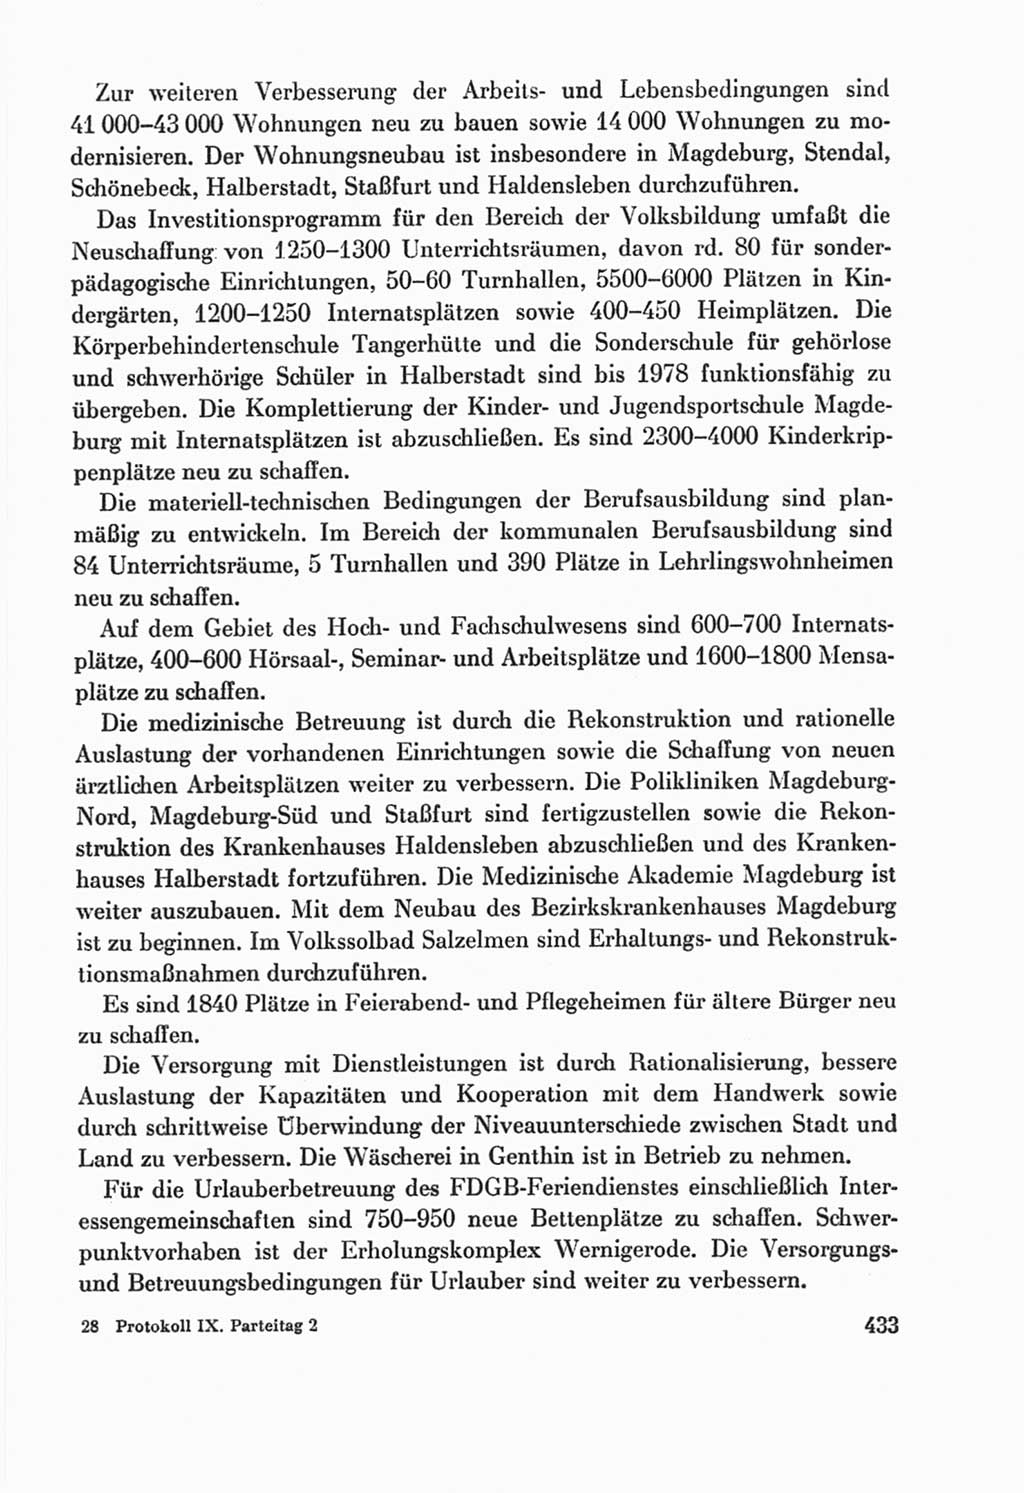 Protokoll der Verhandlungen des Ⅸ. Parteitages der Sozialistischen Einheitspartei Deutschlands (SED) [Deutsche Demokratische Republik (DDR)] 1976, Band 2, Seite 433 (Prot. Verh. Ⅸ. PT SED DDR 1976, Bd. 2, S. 433)